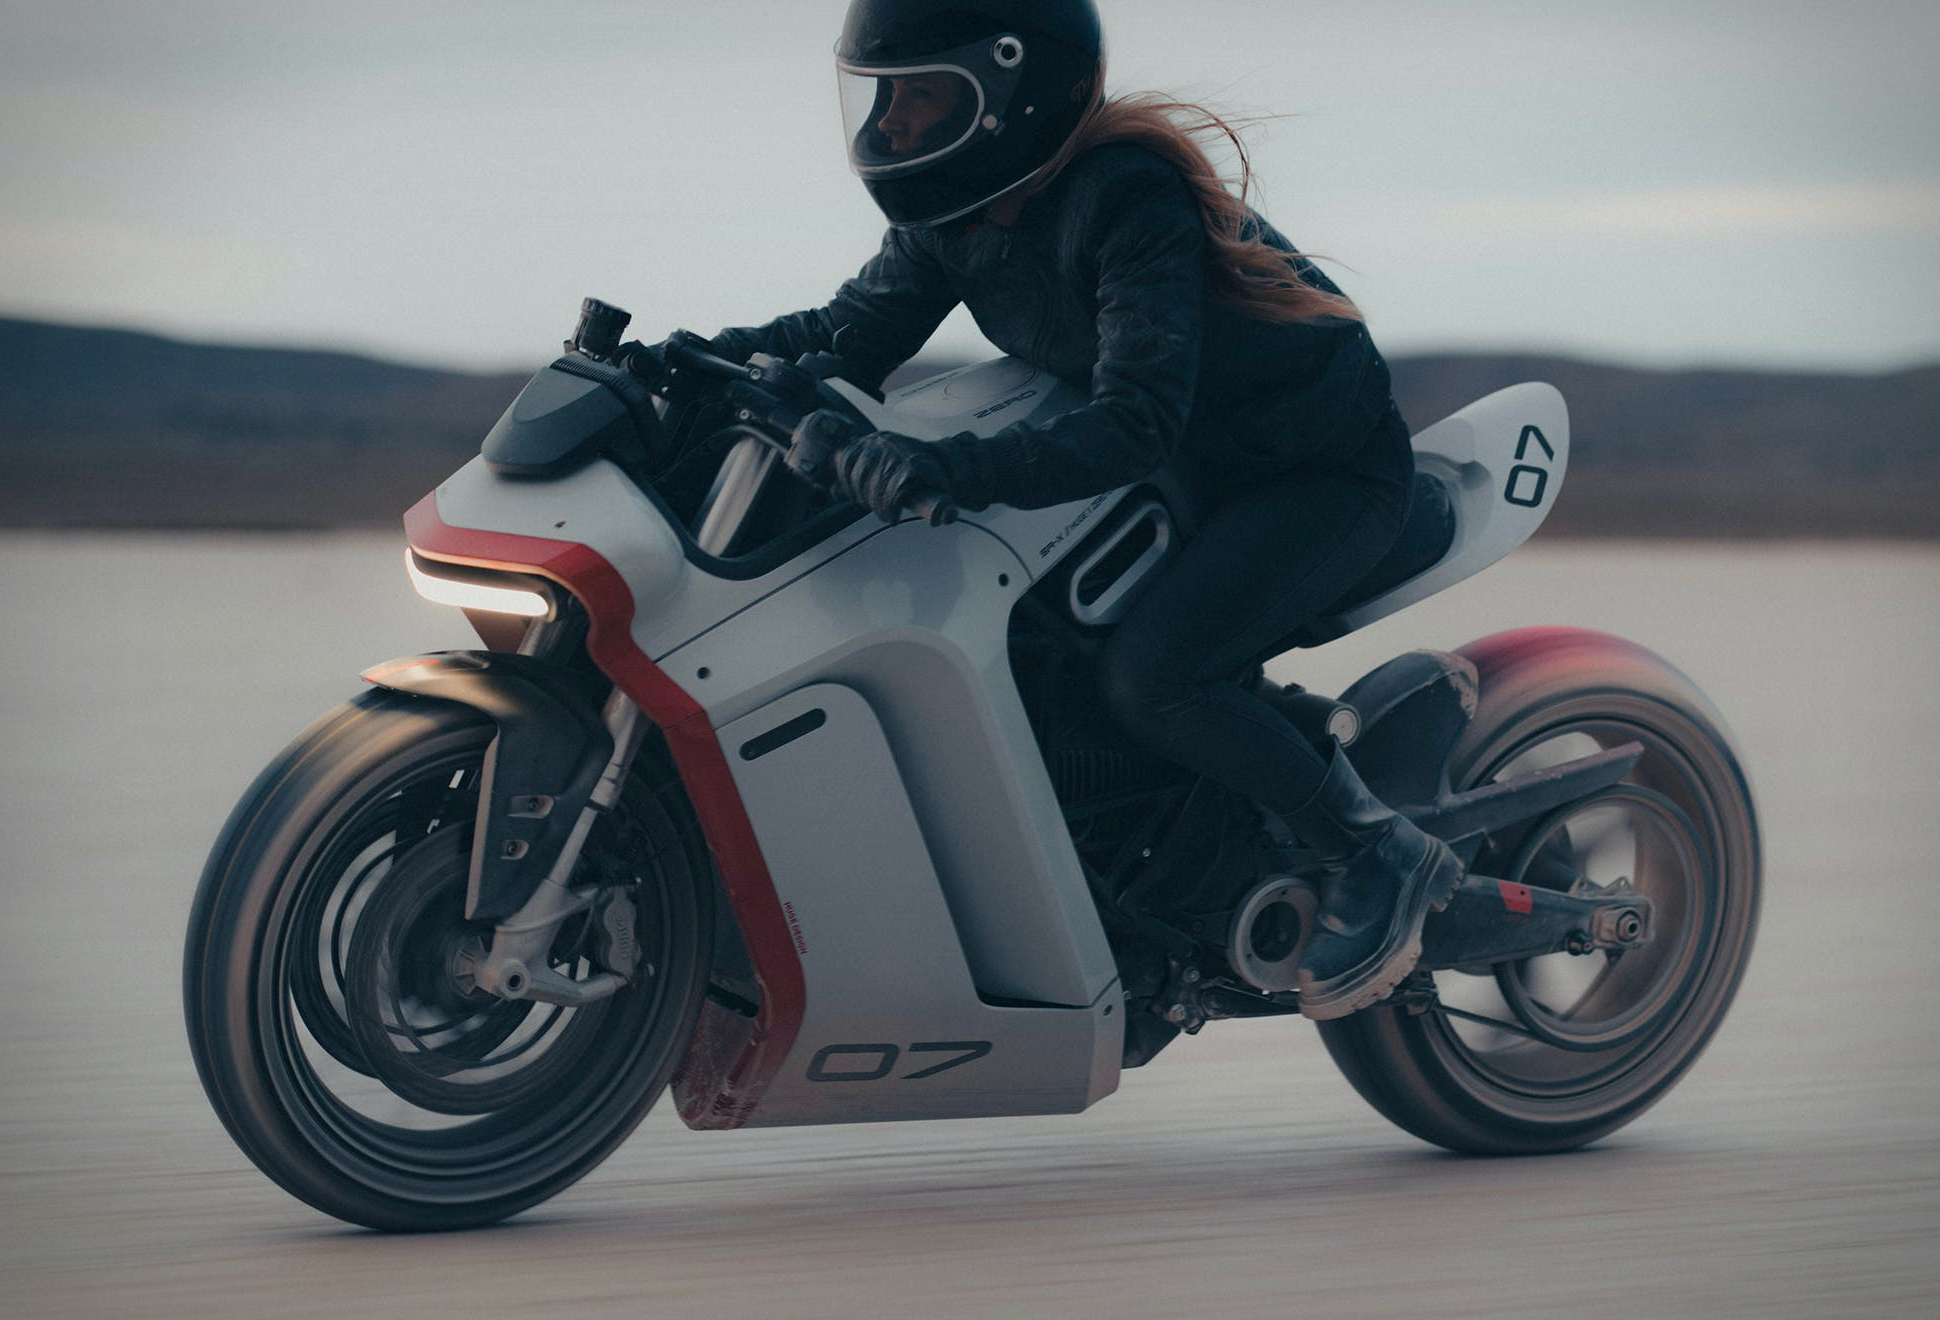 Moto Elétrica - Zero Sr-x Motorcycle | Image